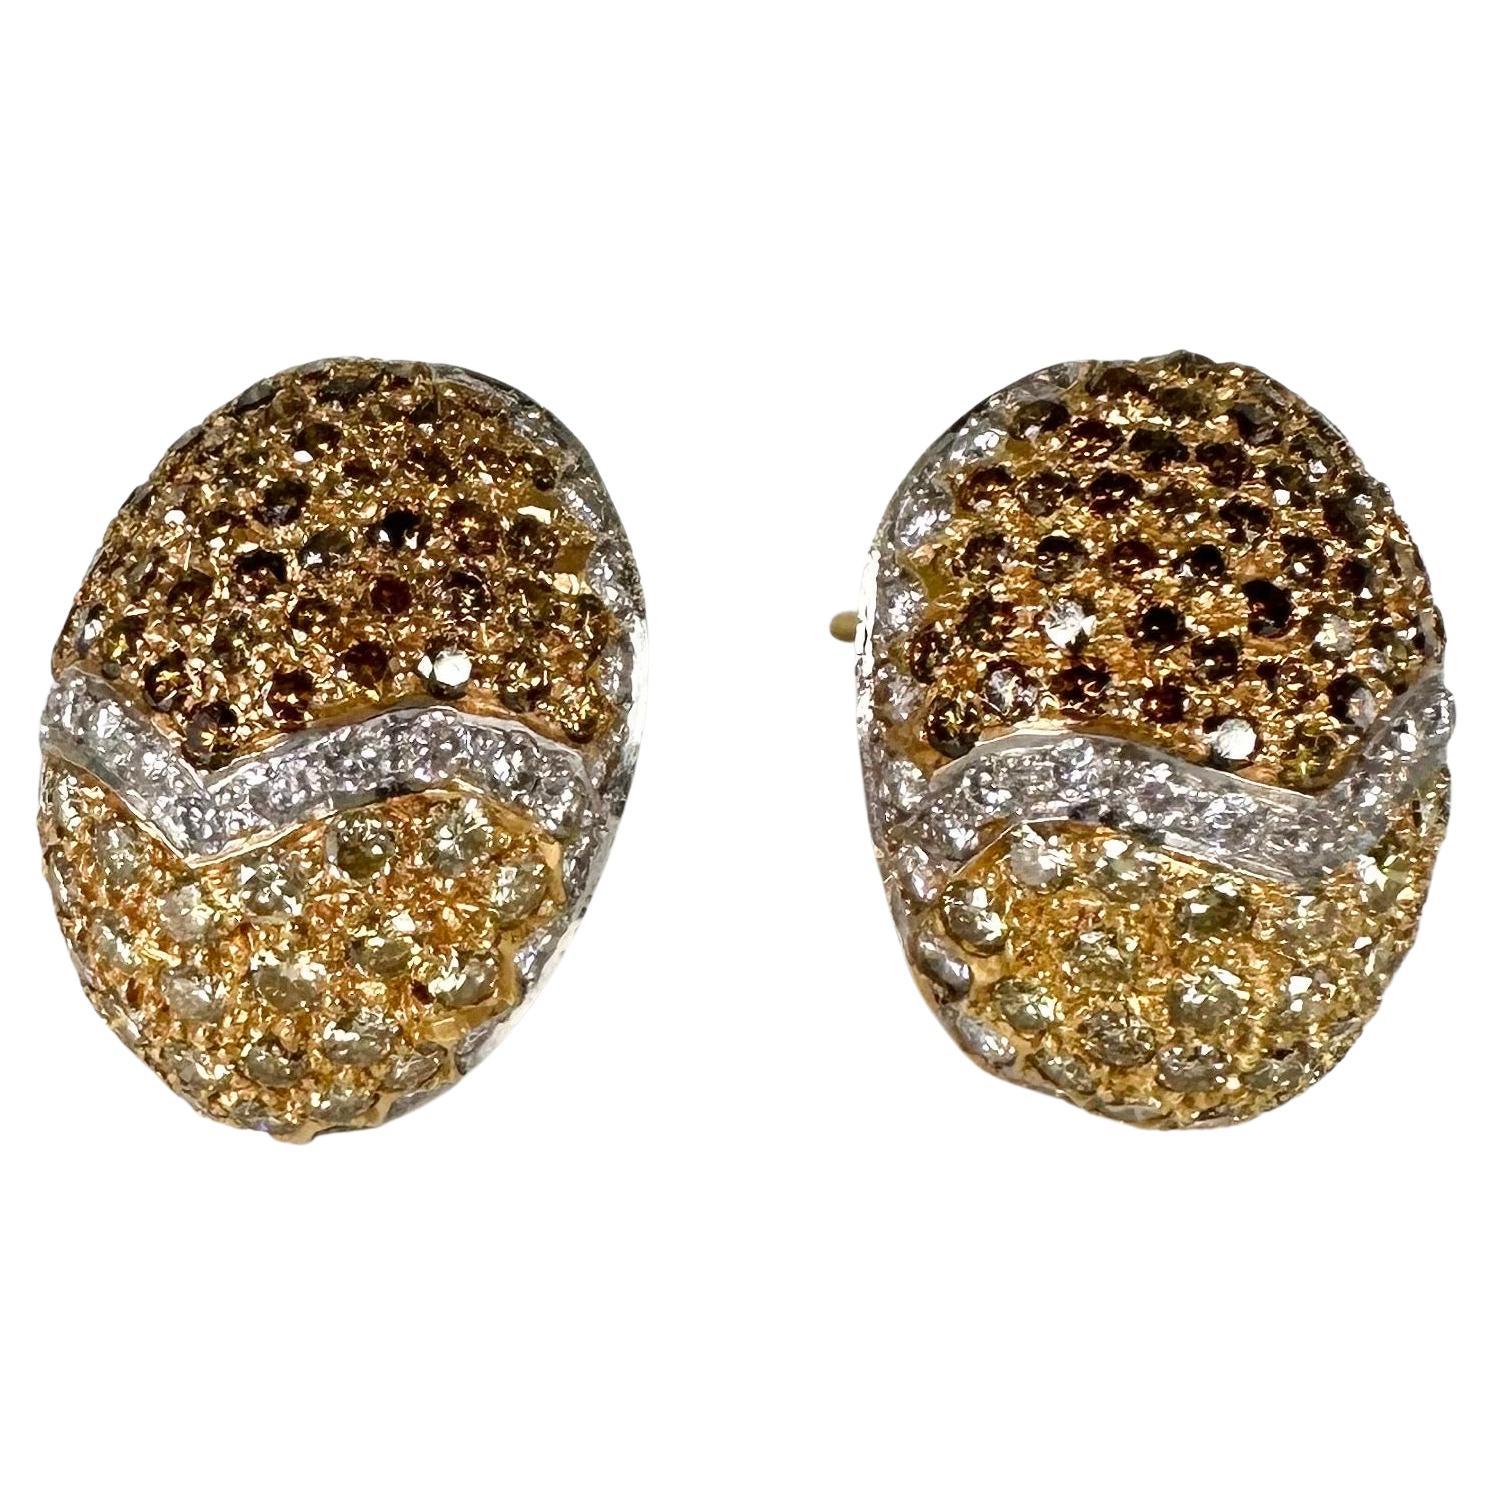 Egg diamond earrings 18KT fancy yellow diamond earrings oval earrings easter 